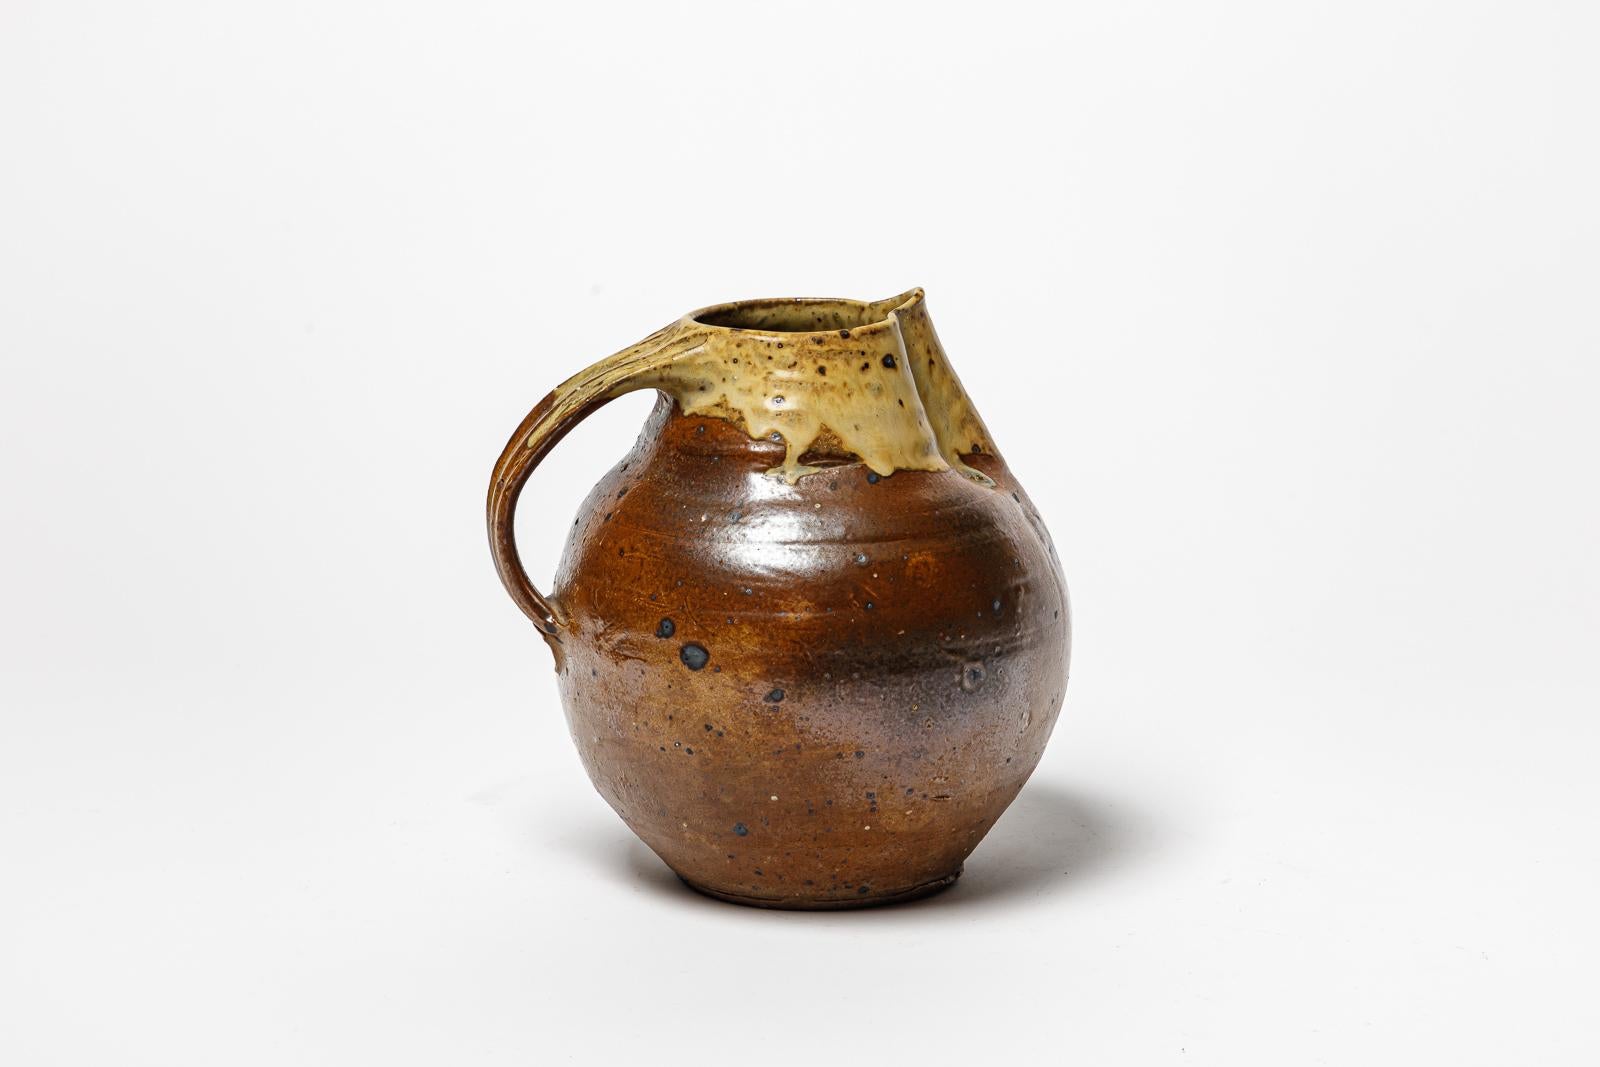 Glazed cemic pitcher by Jacky Coville.
Signature de l’artiste sous la base. Circa 1960-1970. 
H : 8.3’ x 8.3’ x 7.1’ inches.
